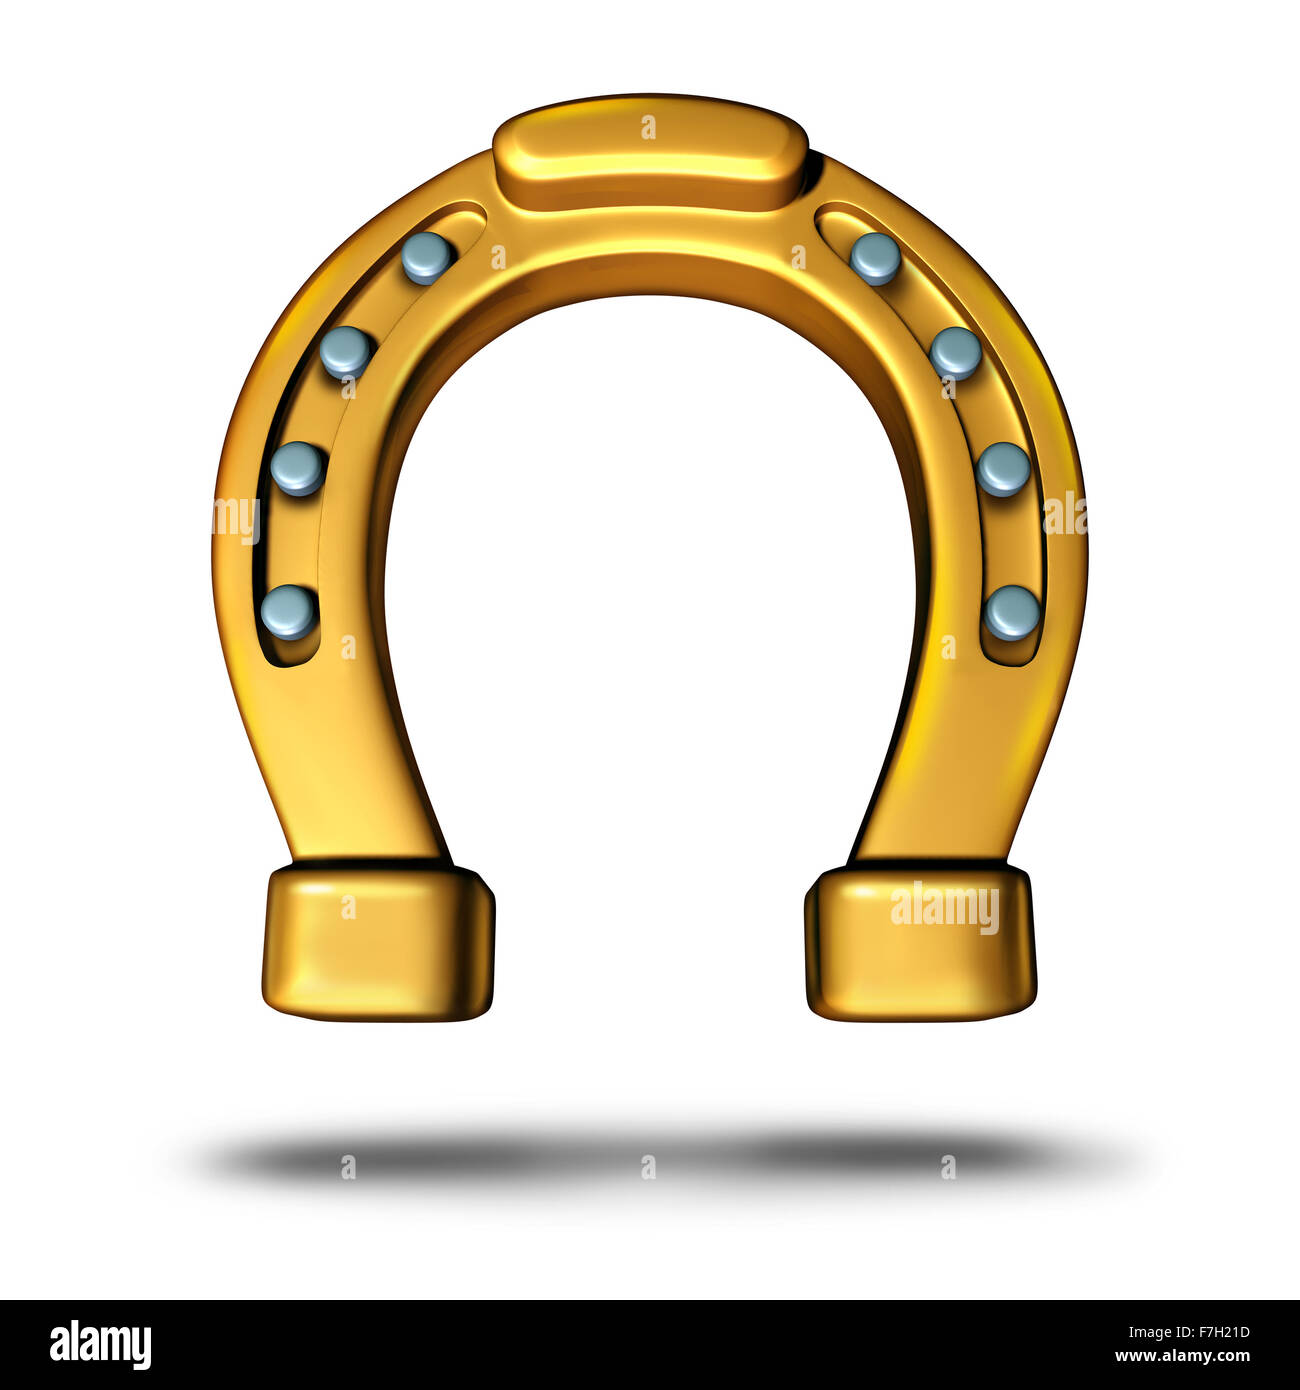 L'icône ou en fer à cheval horse shoe symbole comme un charme porte-bonheur comme un objet en métal doré comme métaphore de fortune et de succès ou un élément de chance. Banque D'Images